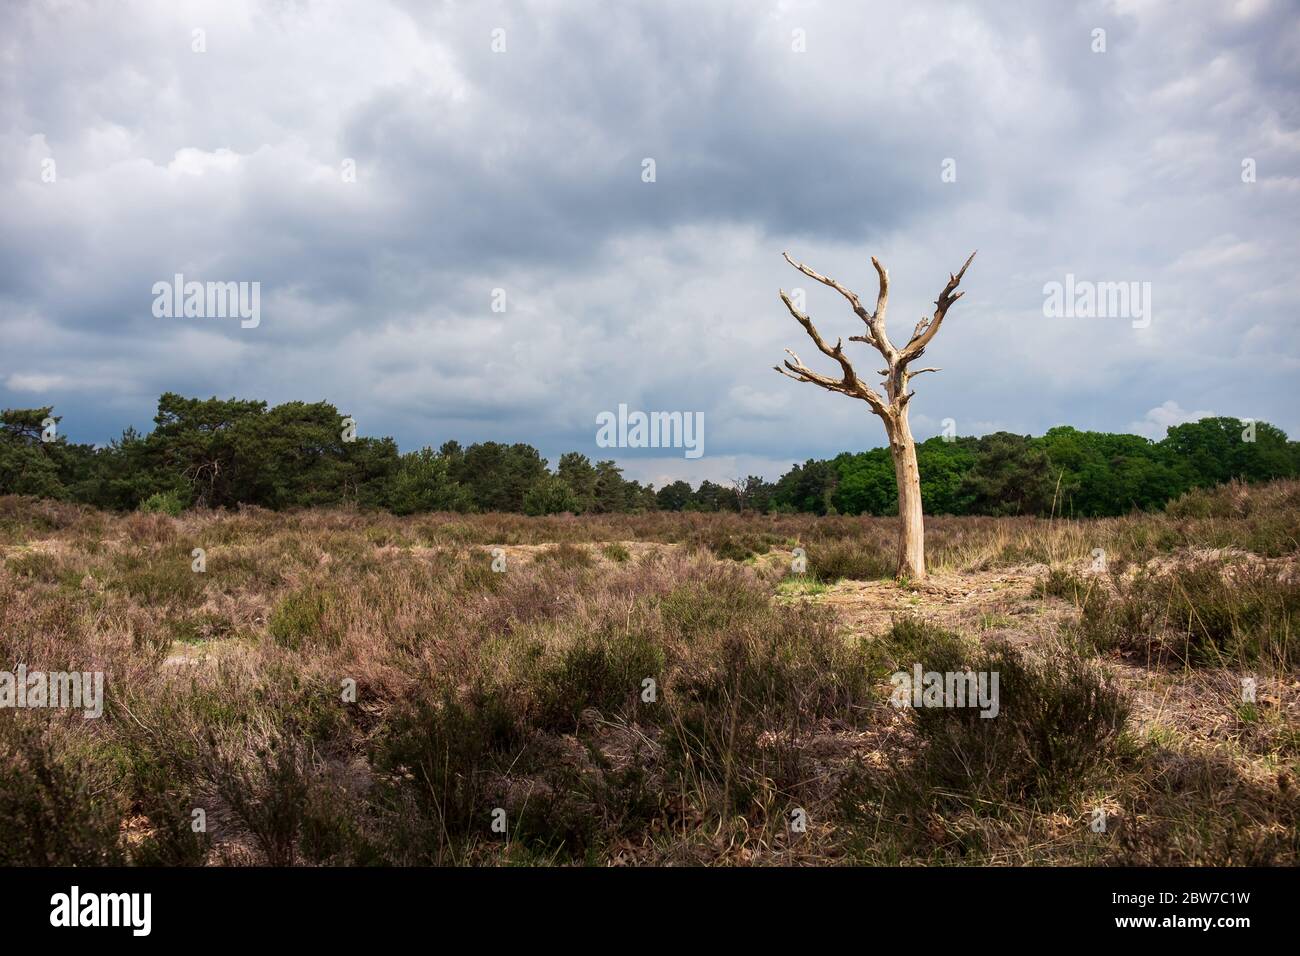 Arbre sec et terre dans le parc naturel de la frontière belge/néerlandaise Kalmthoutse Heide. Le parc souffre de sécheresse et d'alertes incendie chaque été Banque D'Images